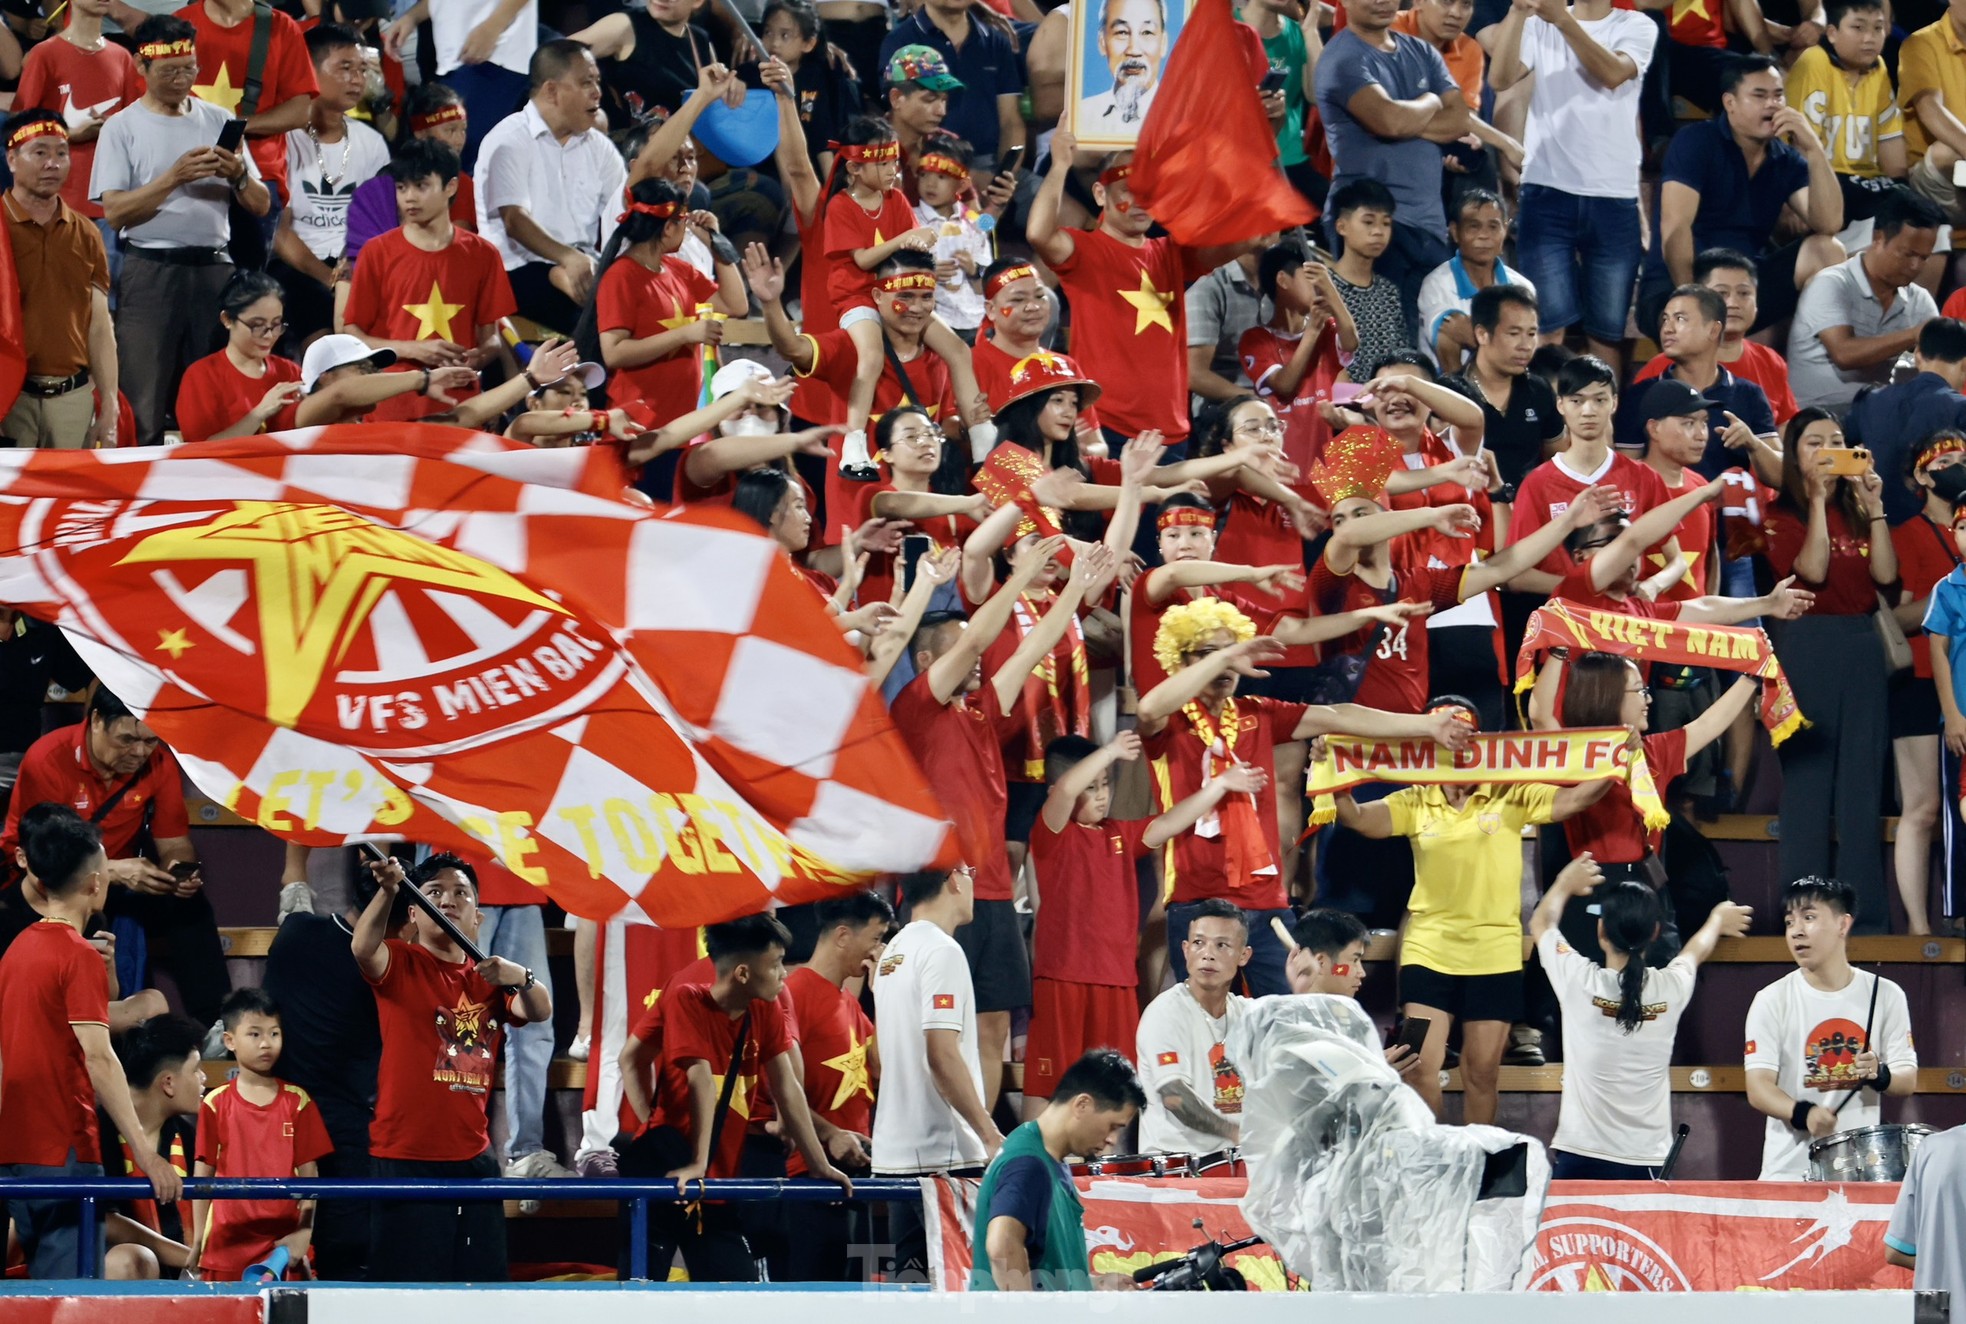 Sau cơn mưa, người hâm mộ Phú Thọ quyết nhuộm đỏ sân Việt Trì, cổ vũ U23 Việt Nam - Ảnh 9.